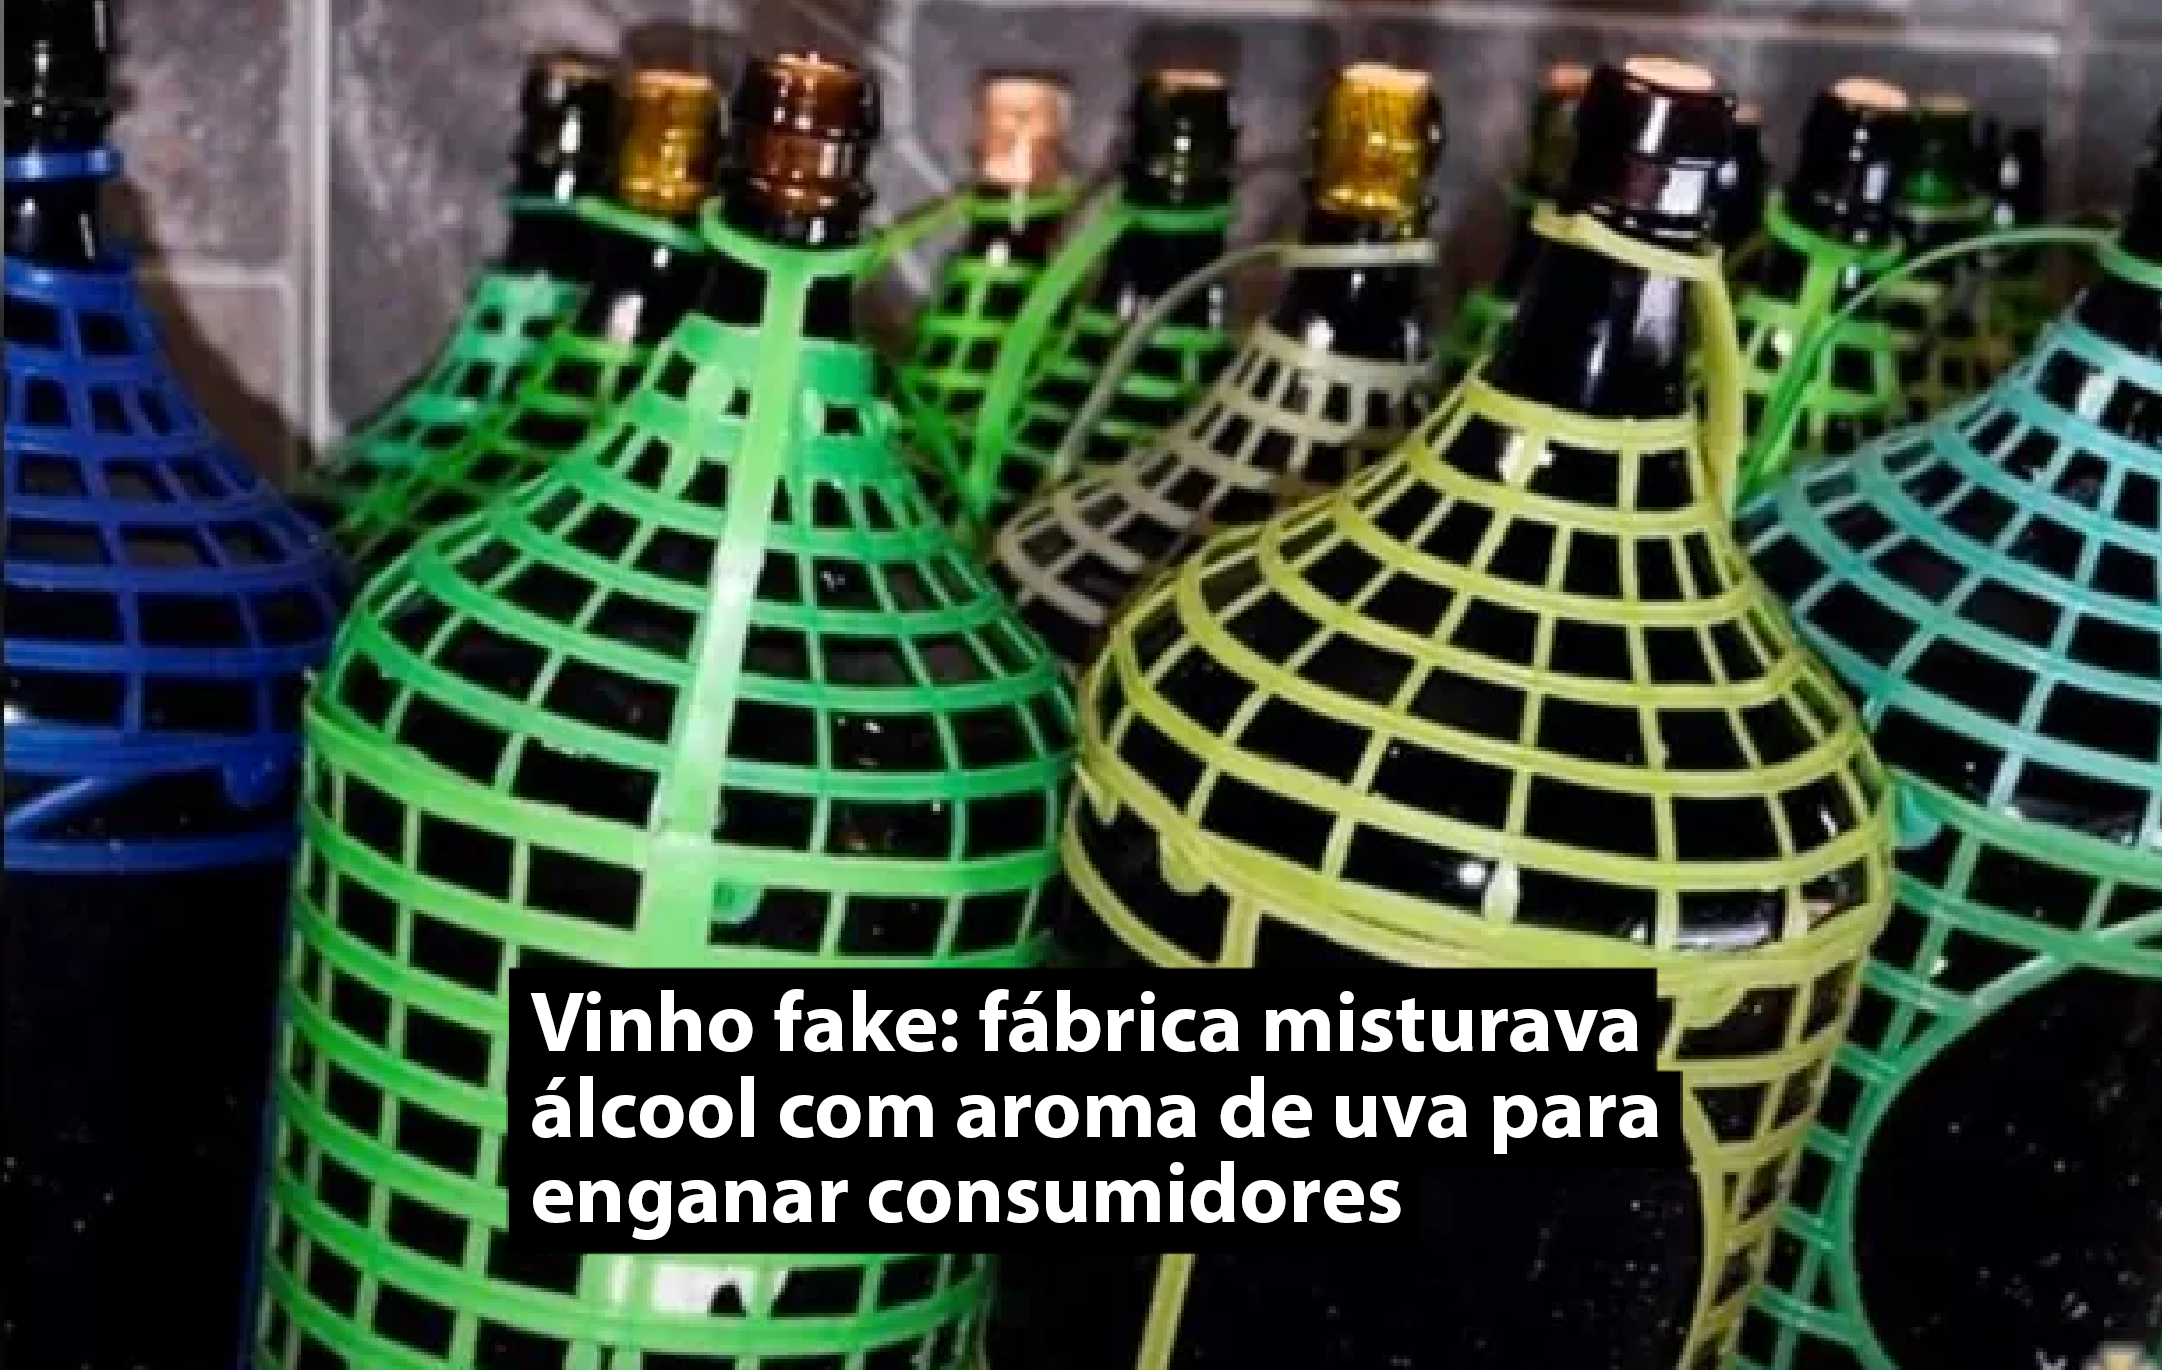 Vinho fake: fábrica misturava álcool com aroma de uva para enganar consumidores